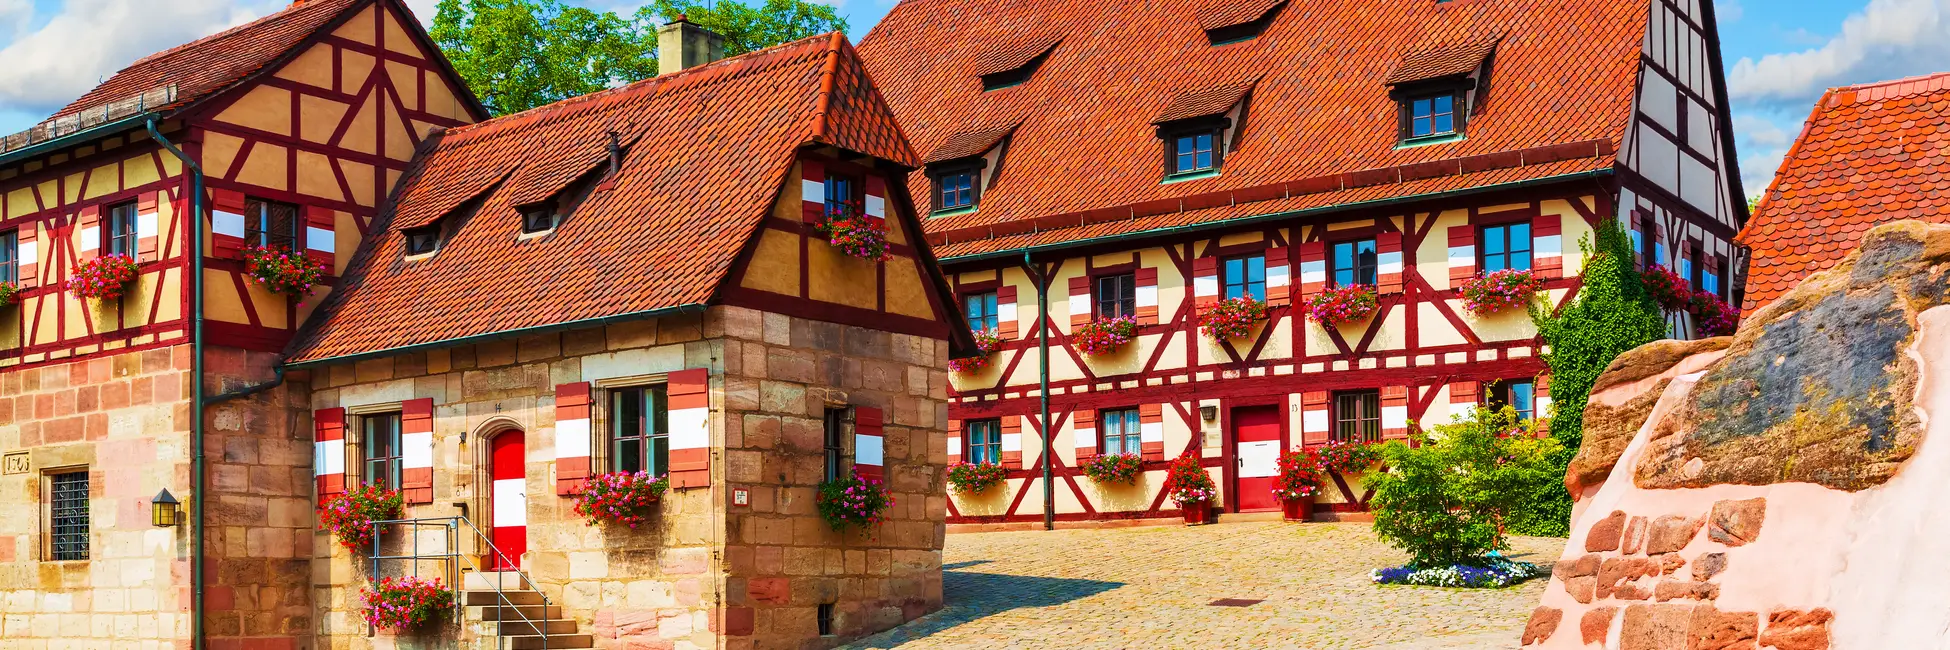 Maison traditionnelle de Nuremberg 